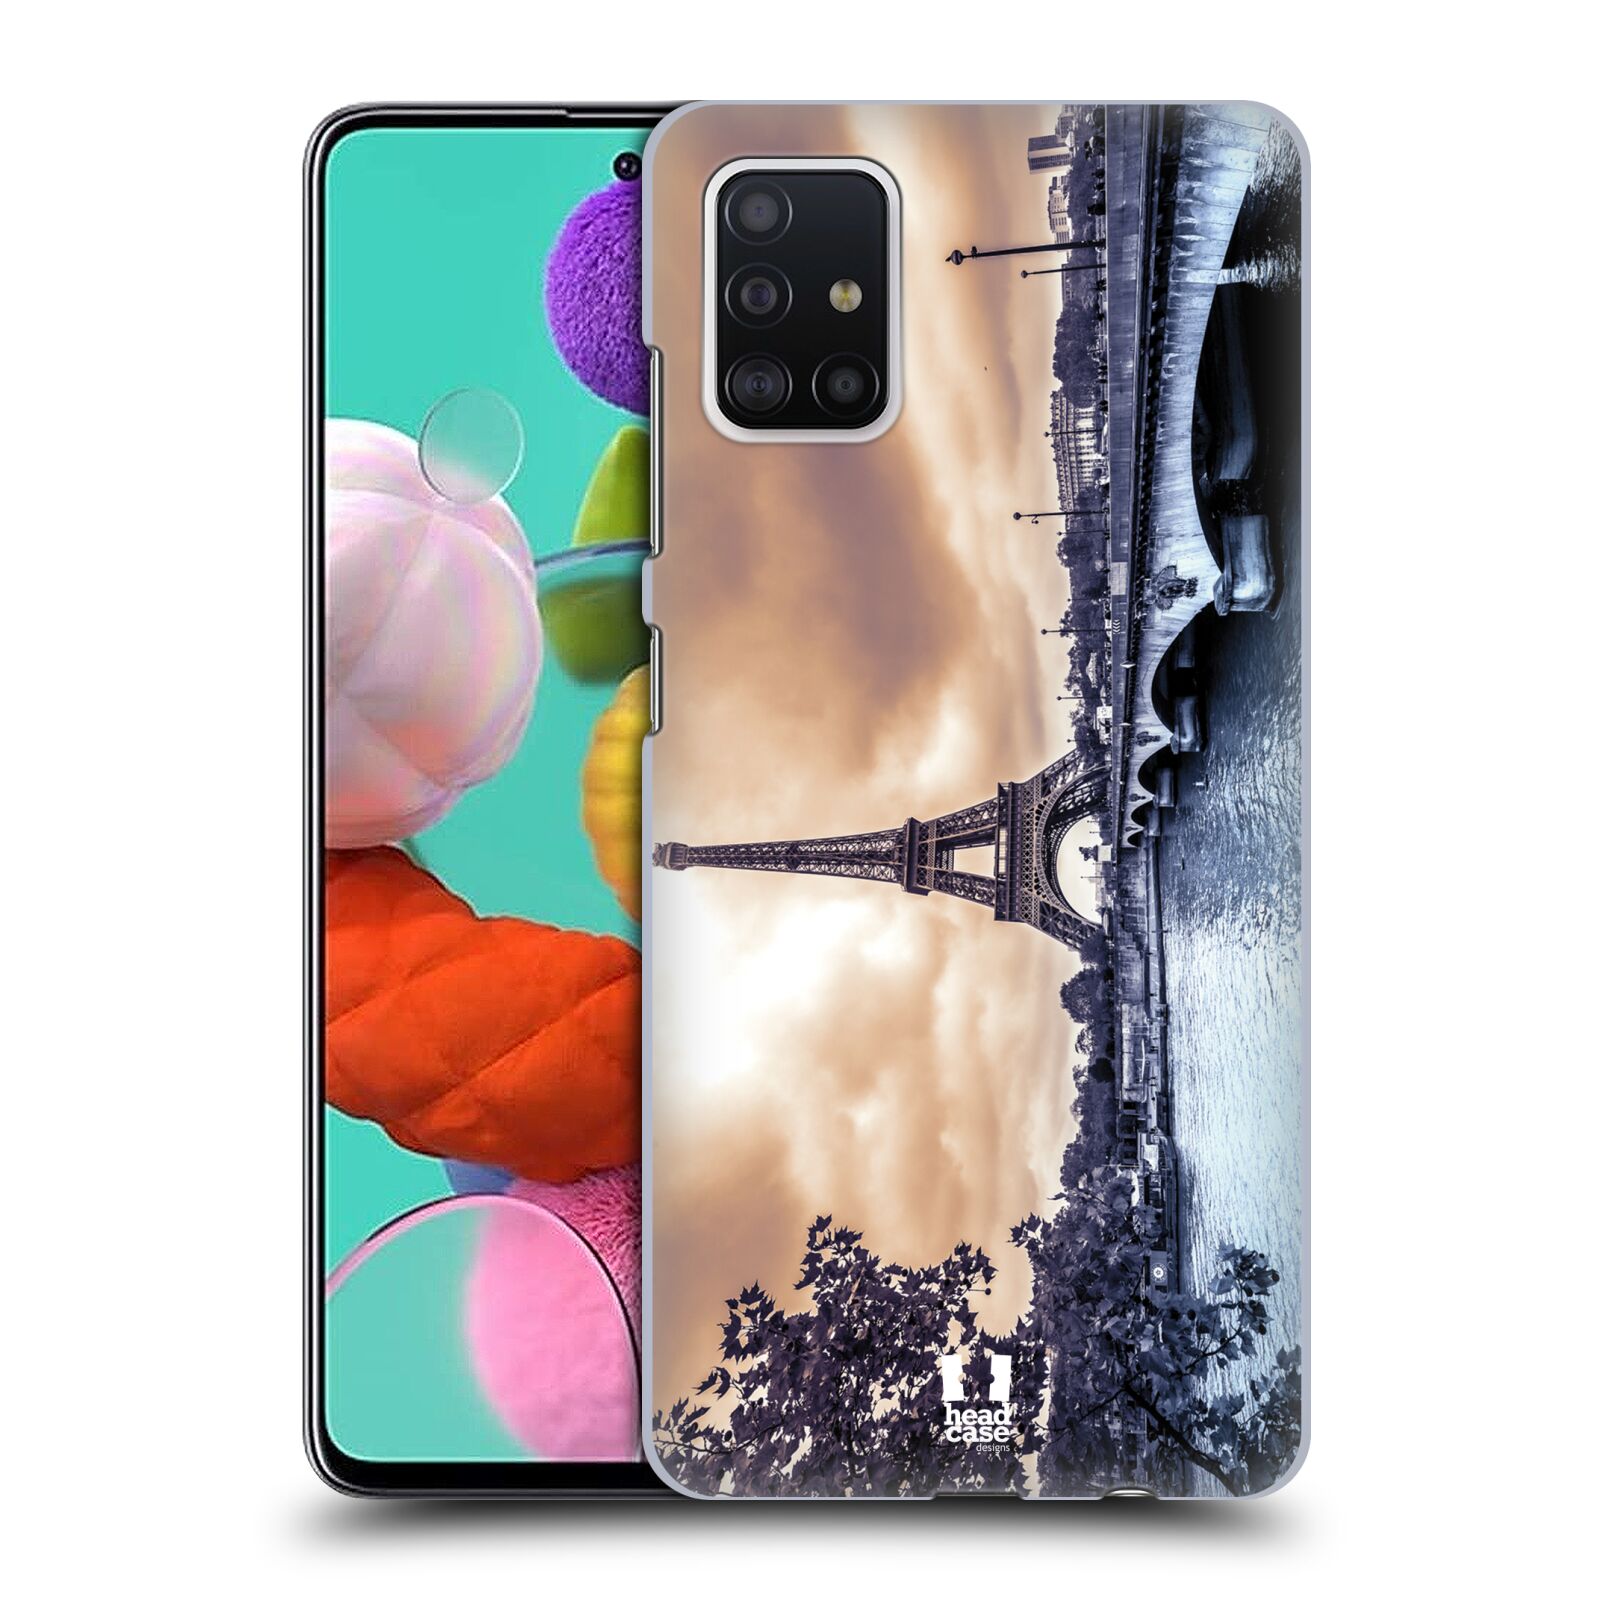 Pouzdro na mobil Samsung Galaxy A51 - HEAD CASE - vzor Panoramata měst horizontální foto DEŠTIVÝ DEN V PAŘÍŽI, FRANCIE